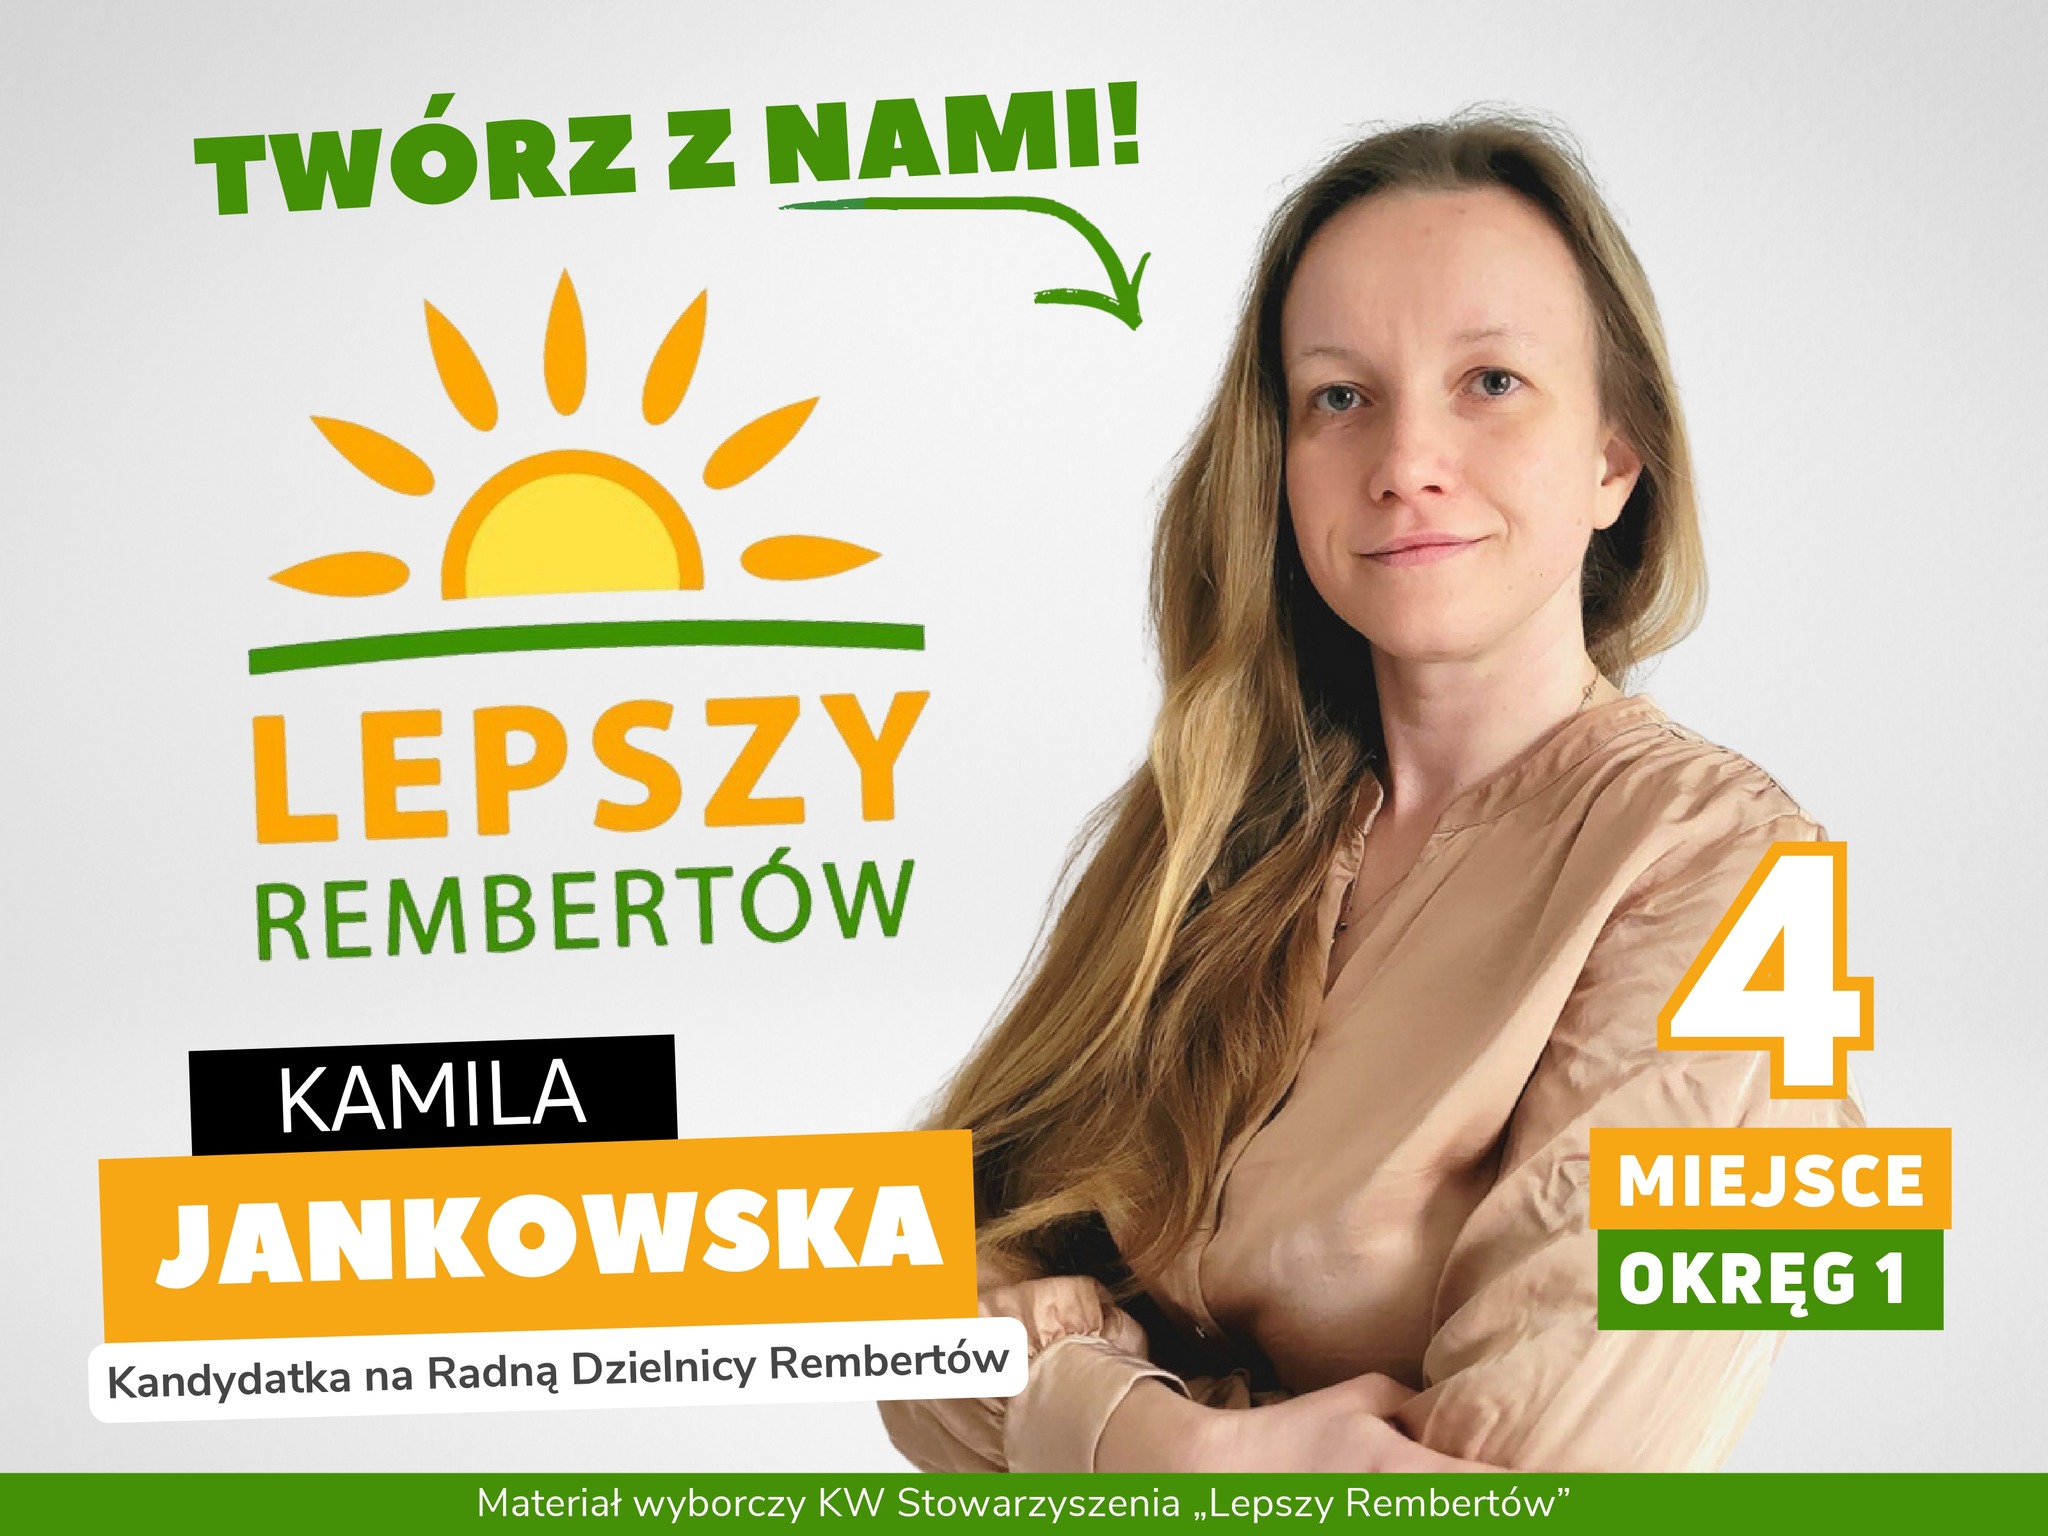 Kamila Jankowska Okręg 1 miejsce 4